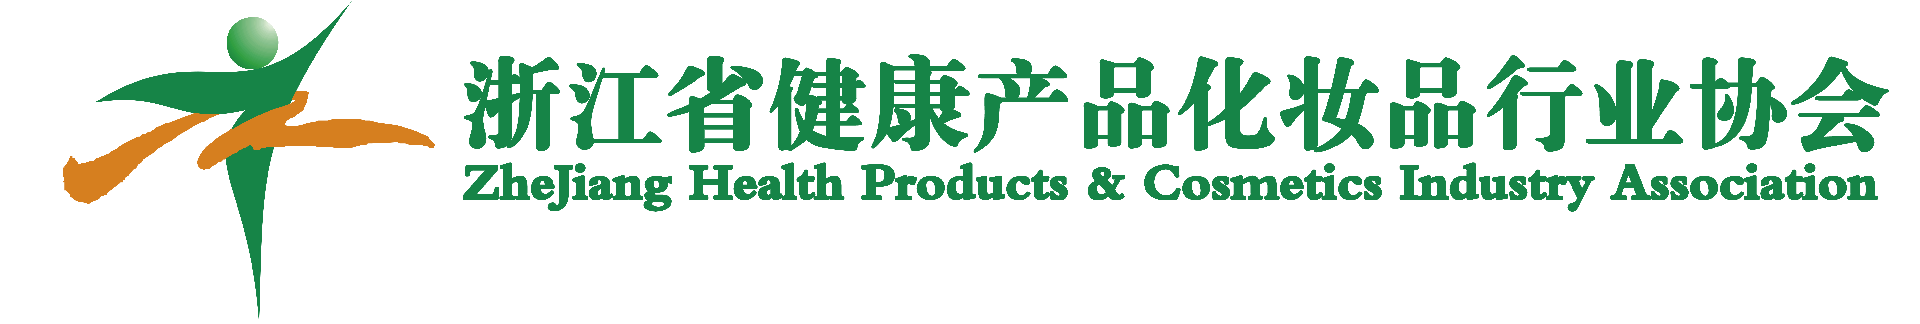 浙江省健康产品化妆品行业协会-浙江省健康产品化妆品行业协会